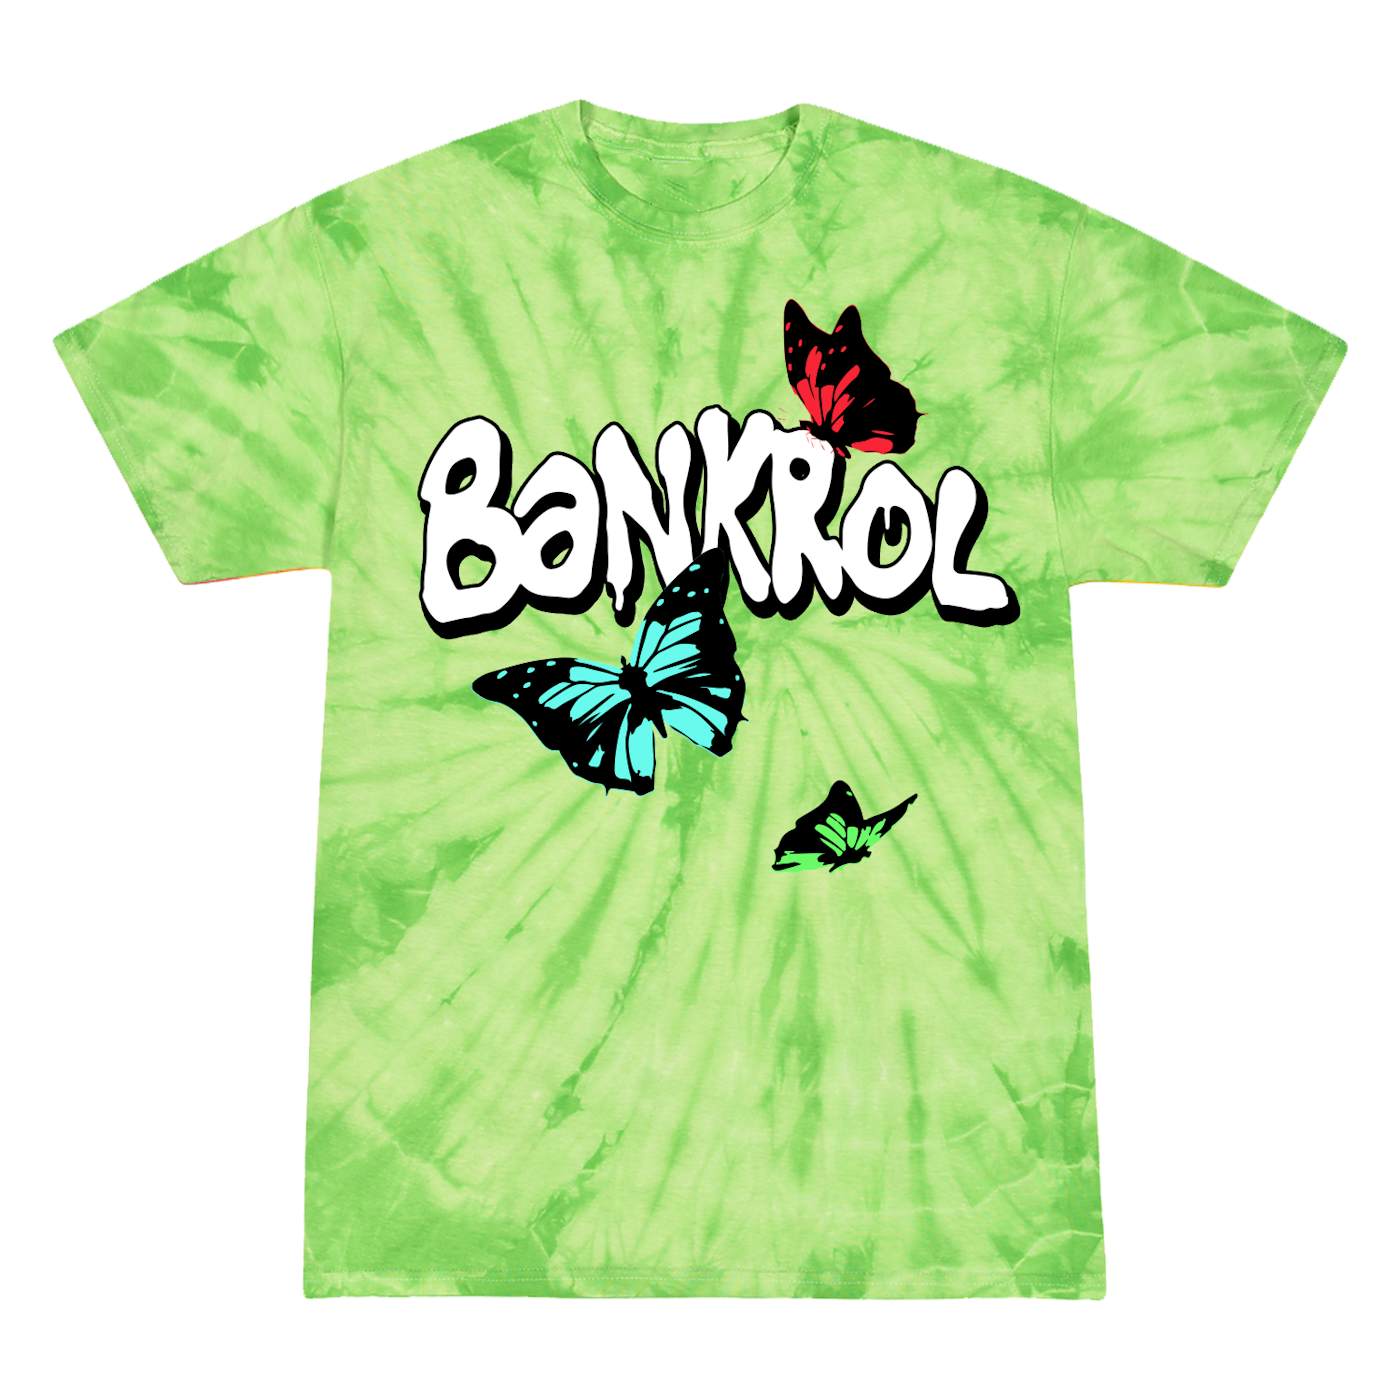 Bankrol Hayden - B.A.N.K.R.O.L. Butterfly (Green)